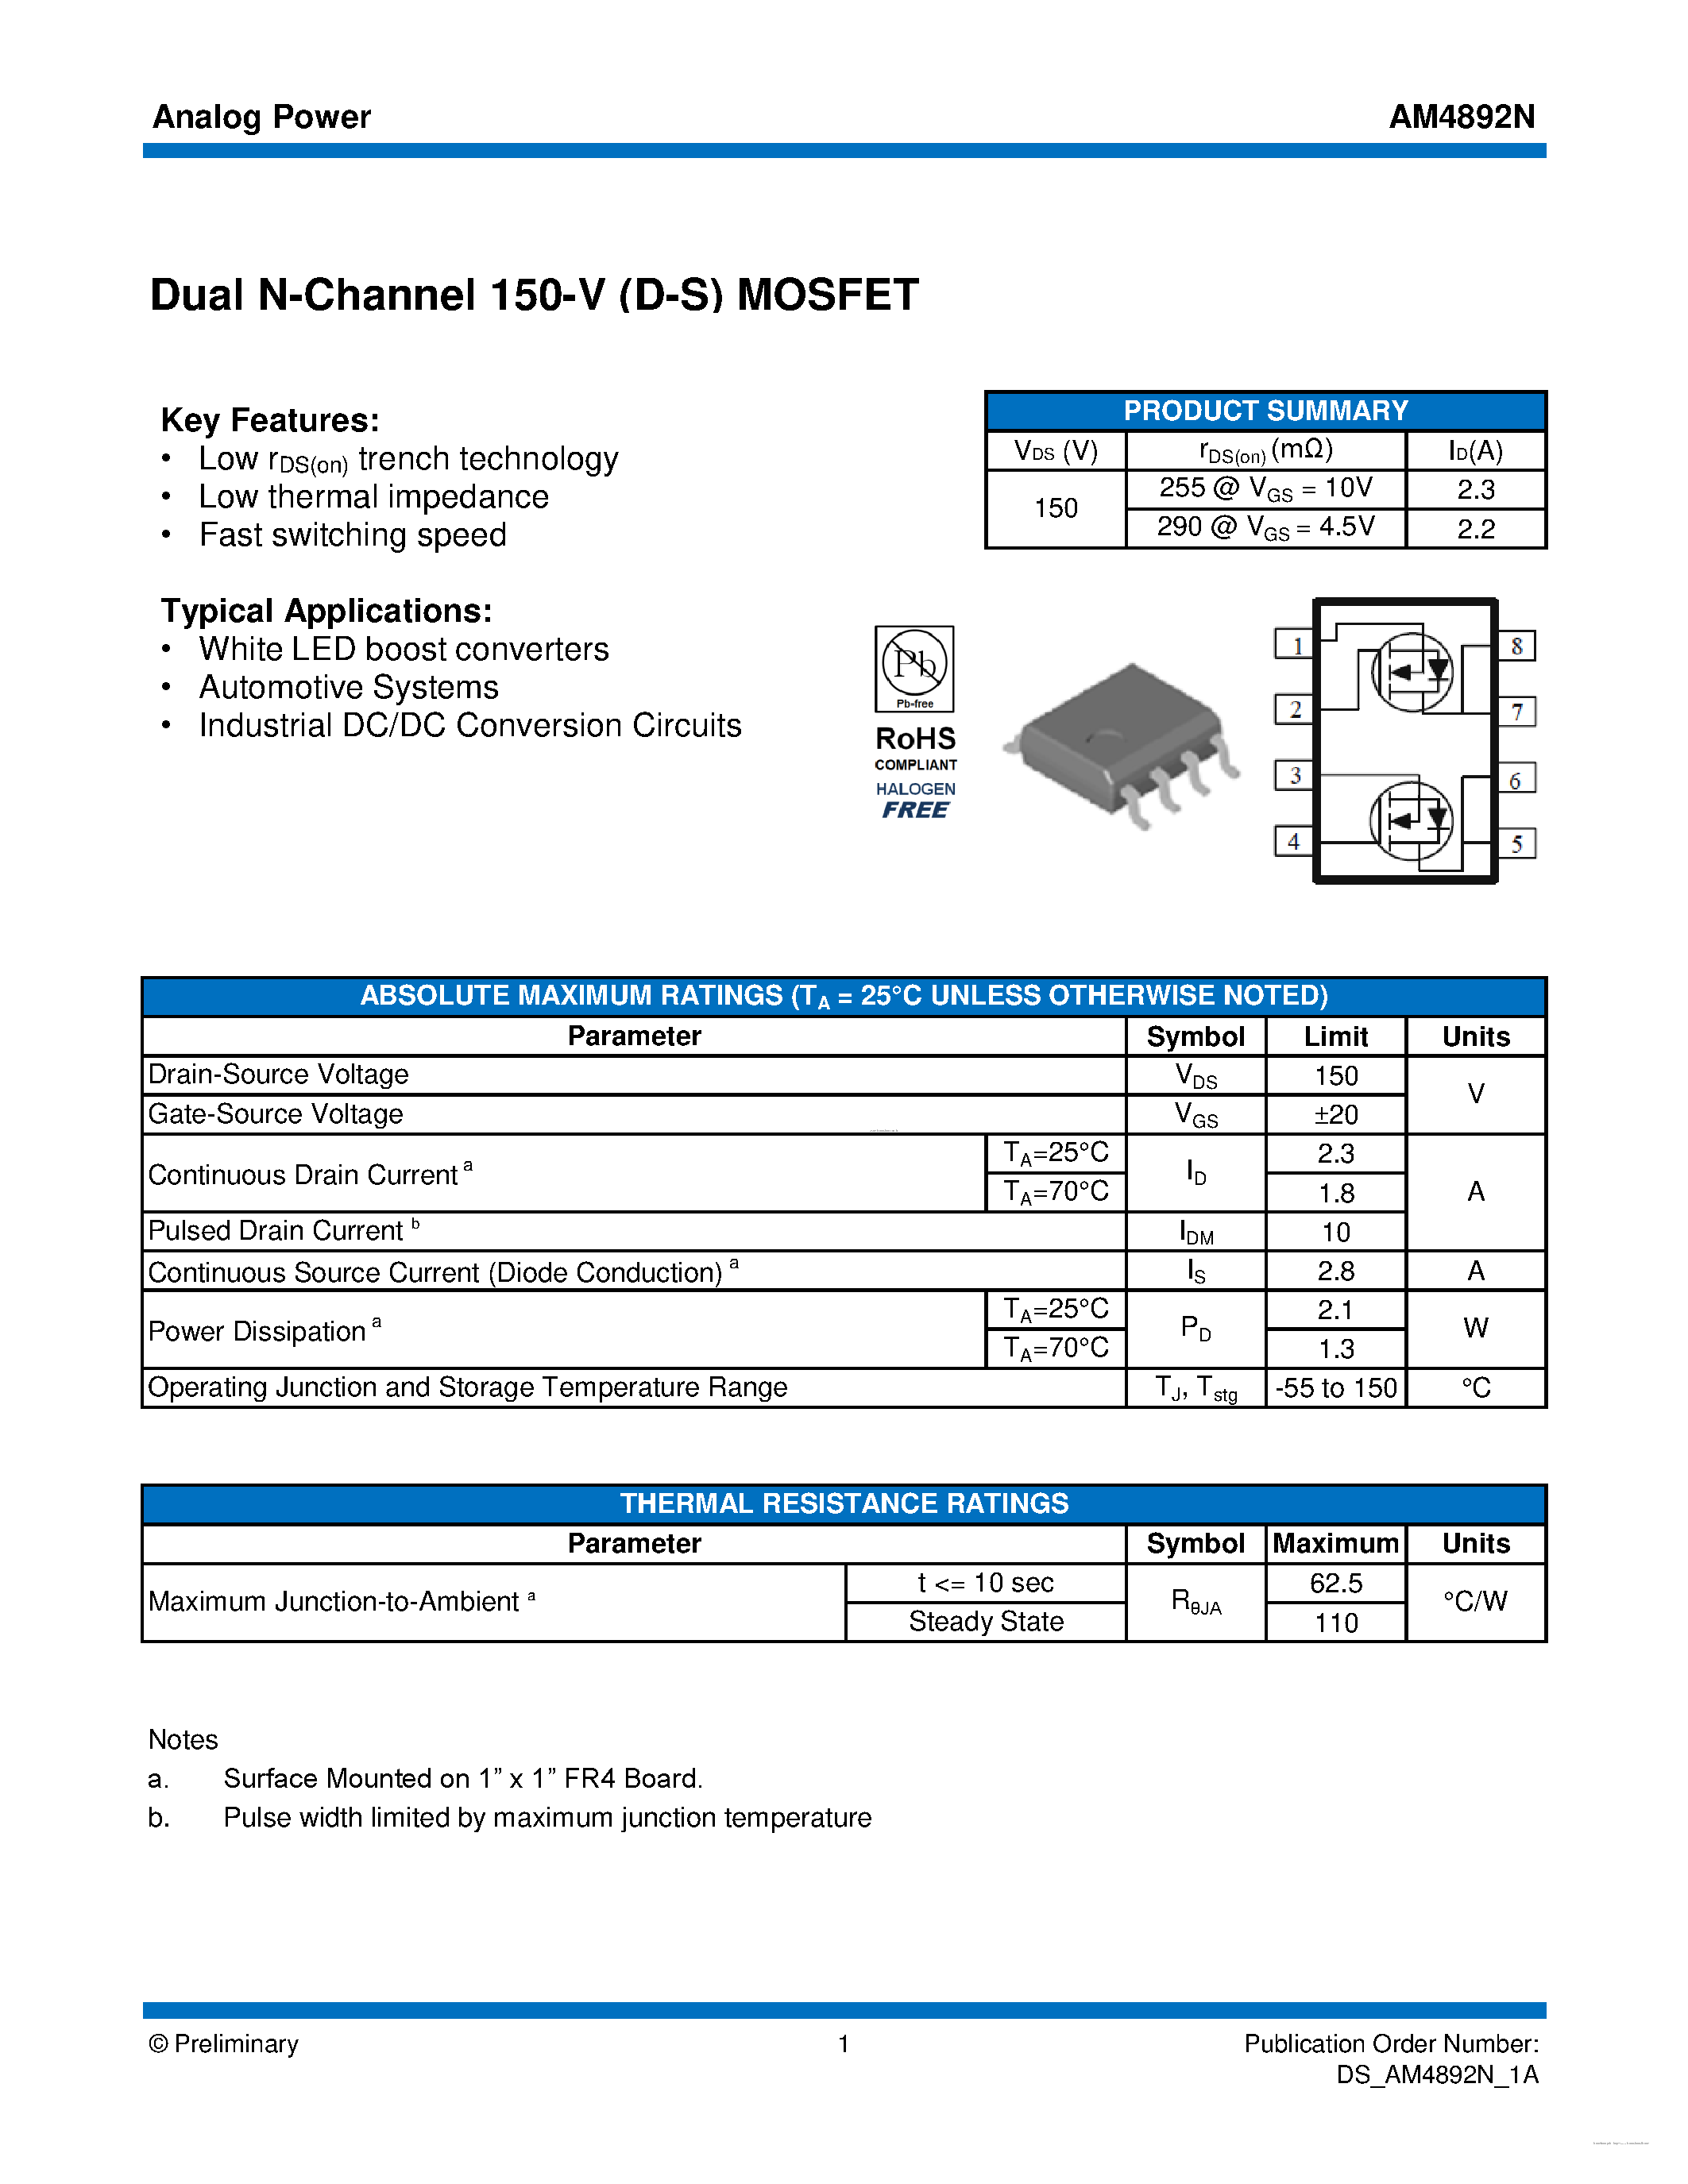 Даташит AM4892N - MOSFET страница 1